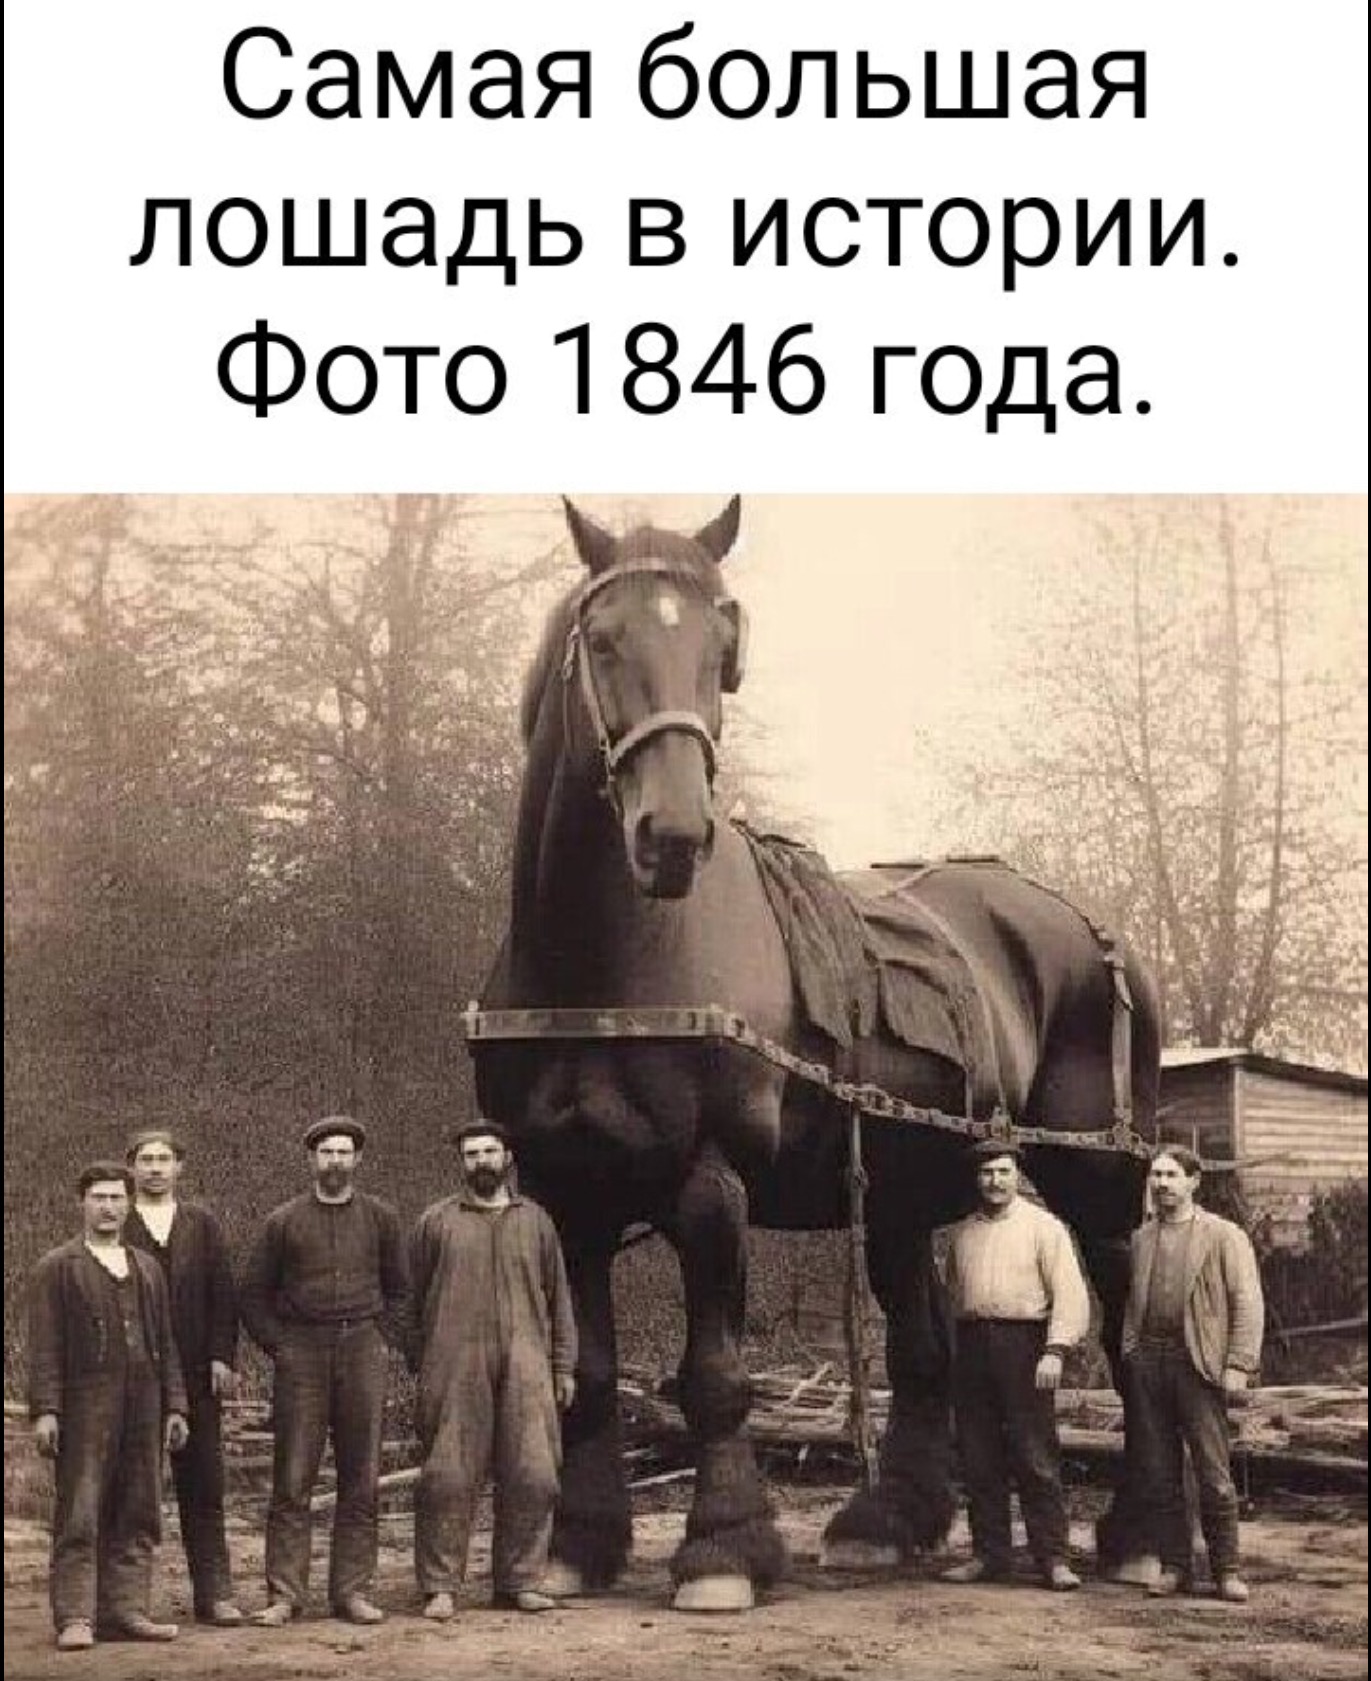 Большой конь 1846 года. Самая большая лошадь в истории.